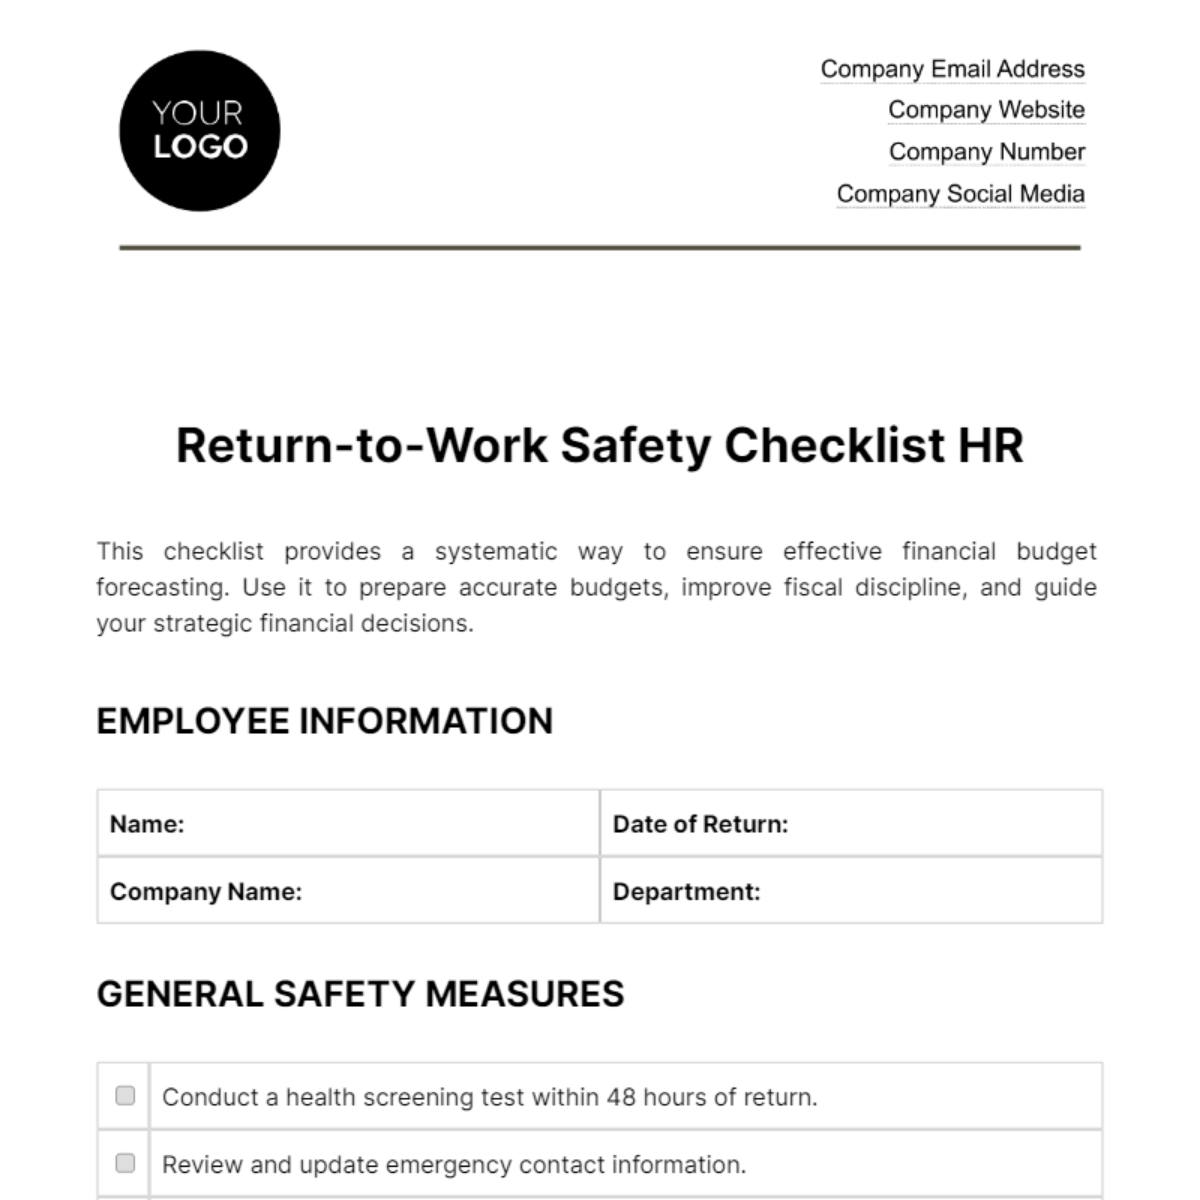 Return-to-Work Safety Checklist HR Template